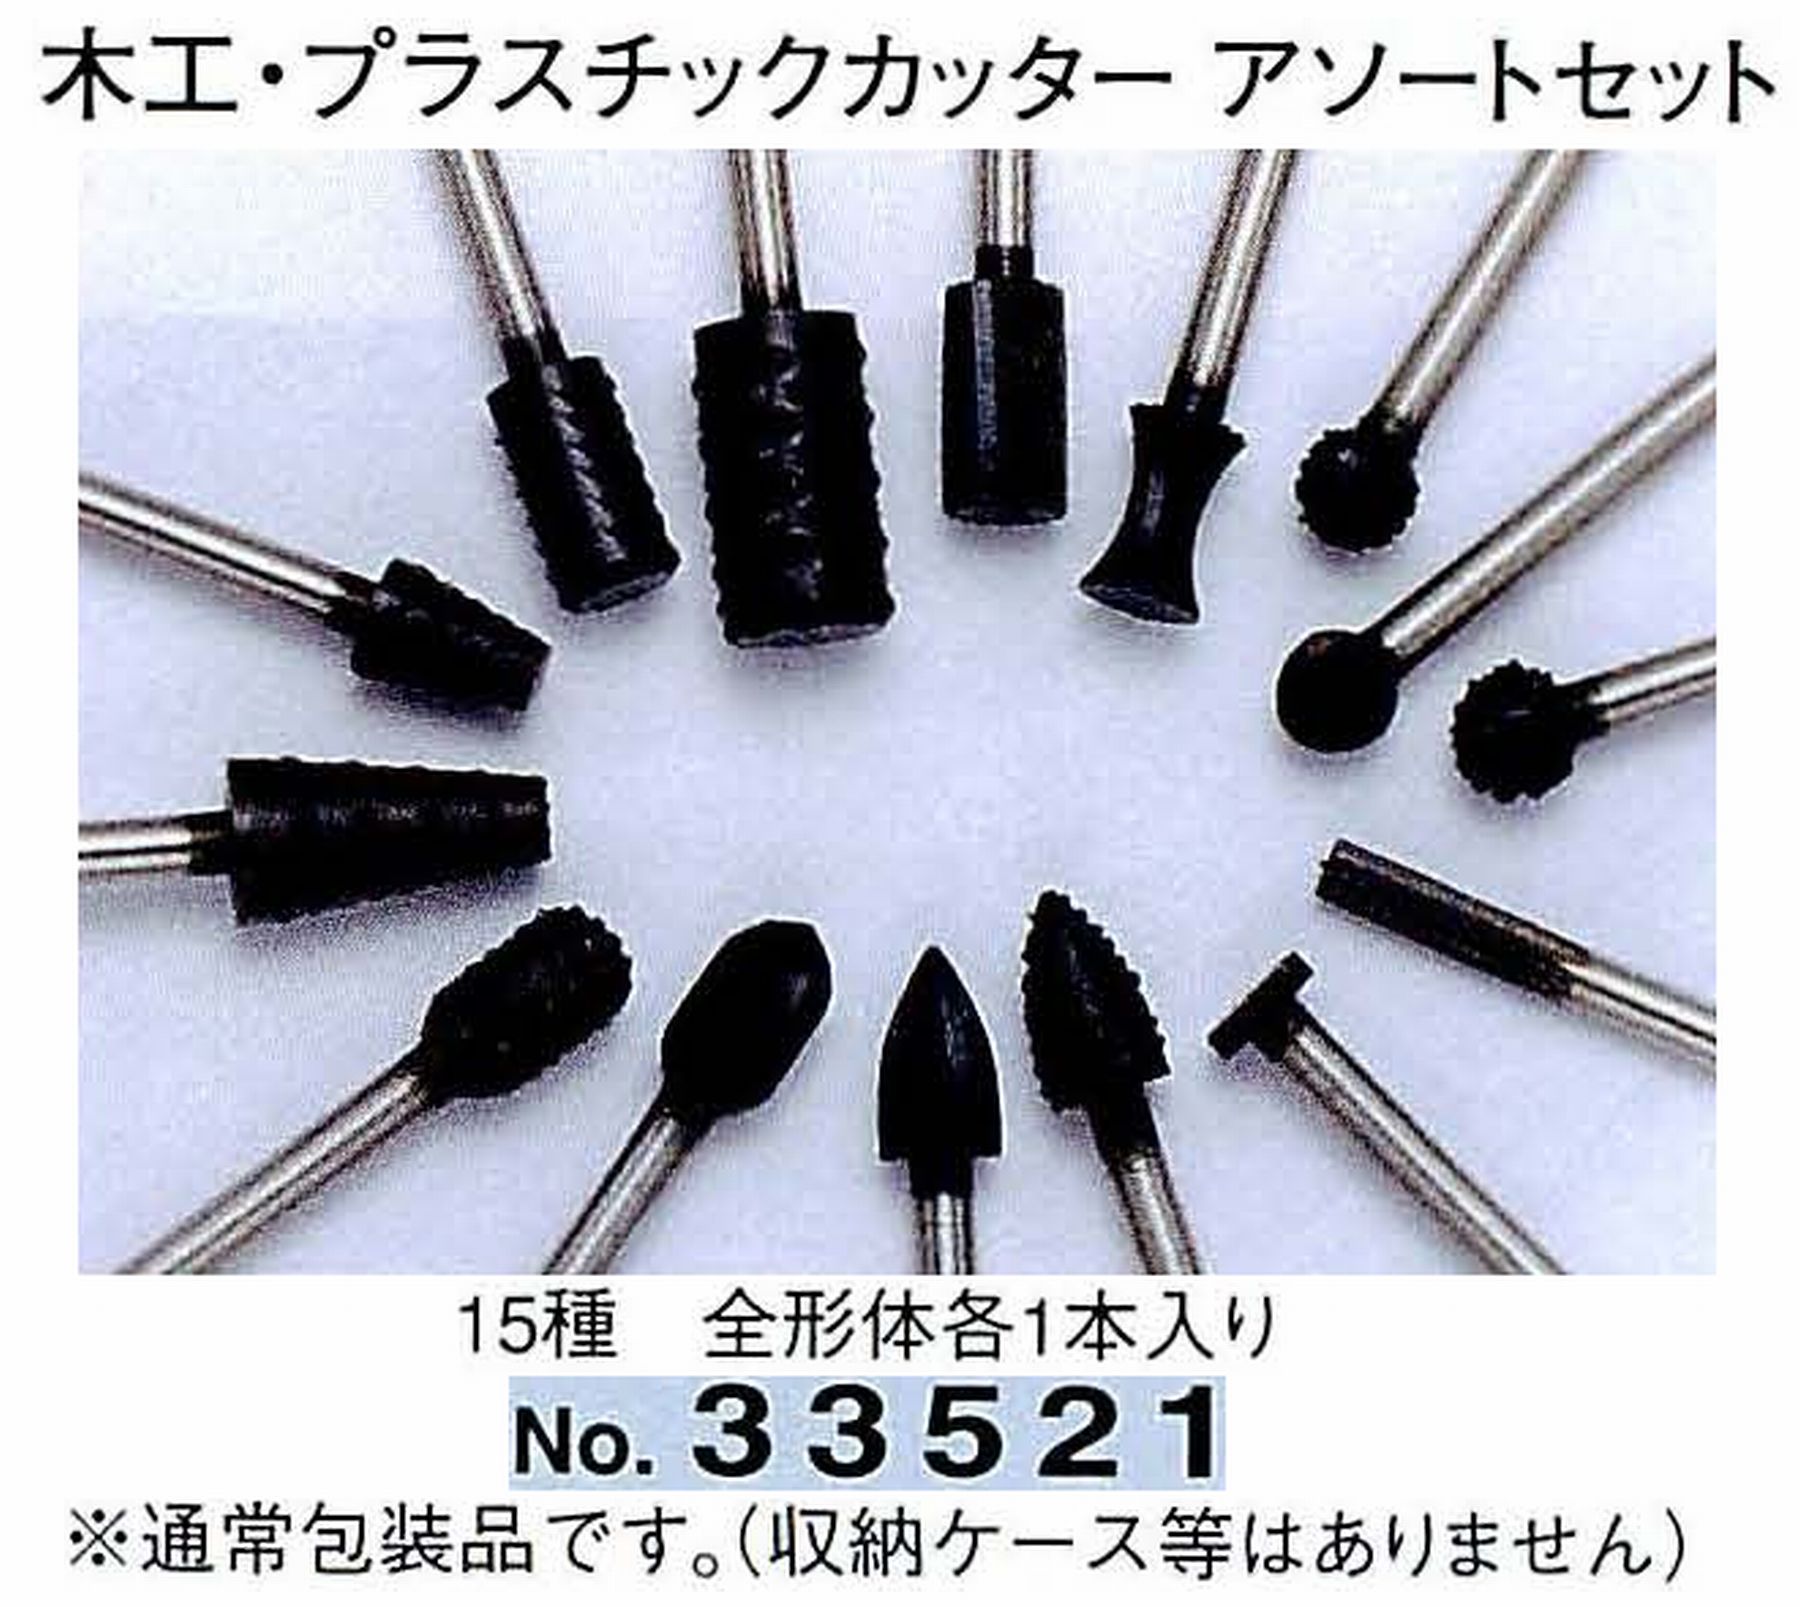 ナカニシ/NAKANISHI 木工・プラスチックカッター アソートセット(15種 全形体各1本入) 軸径(シャンク)φ3.0mm 33521